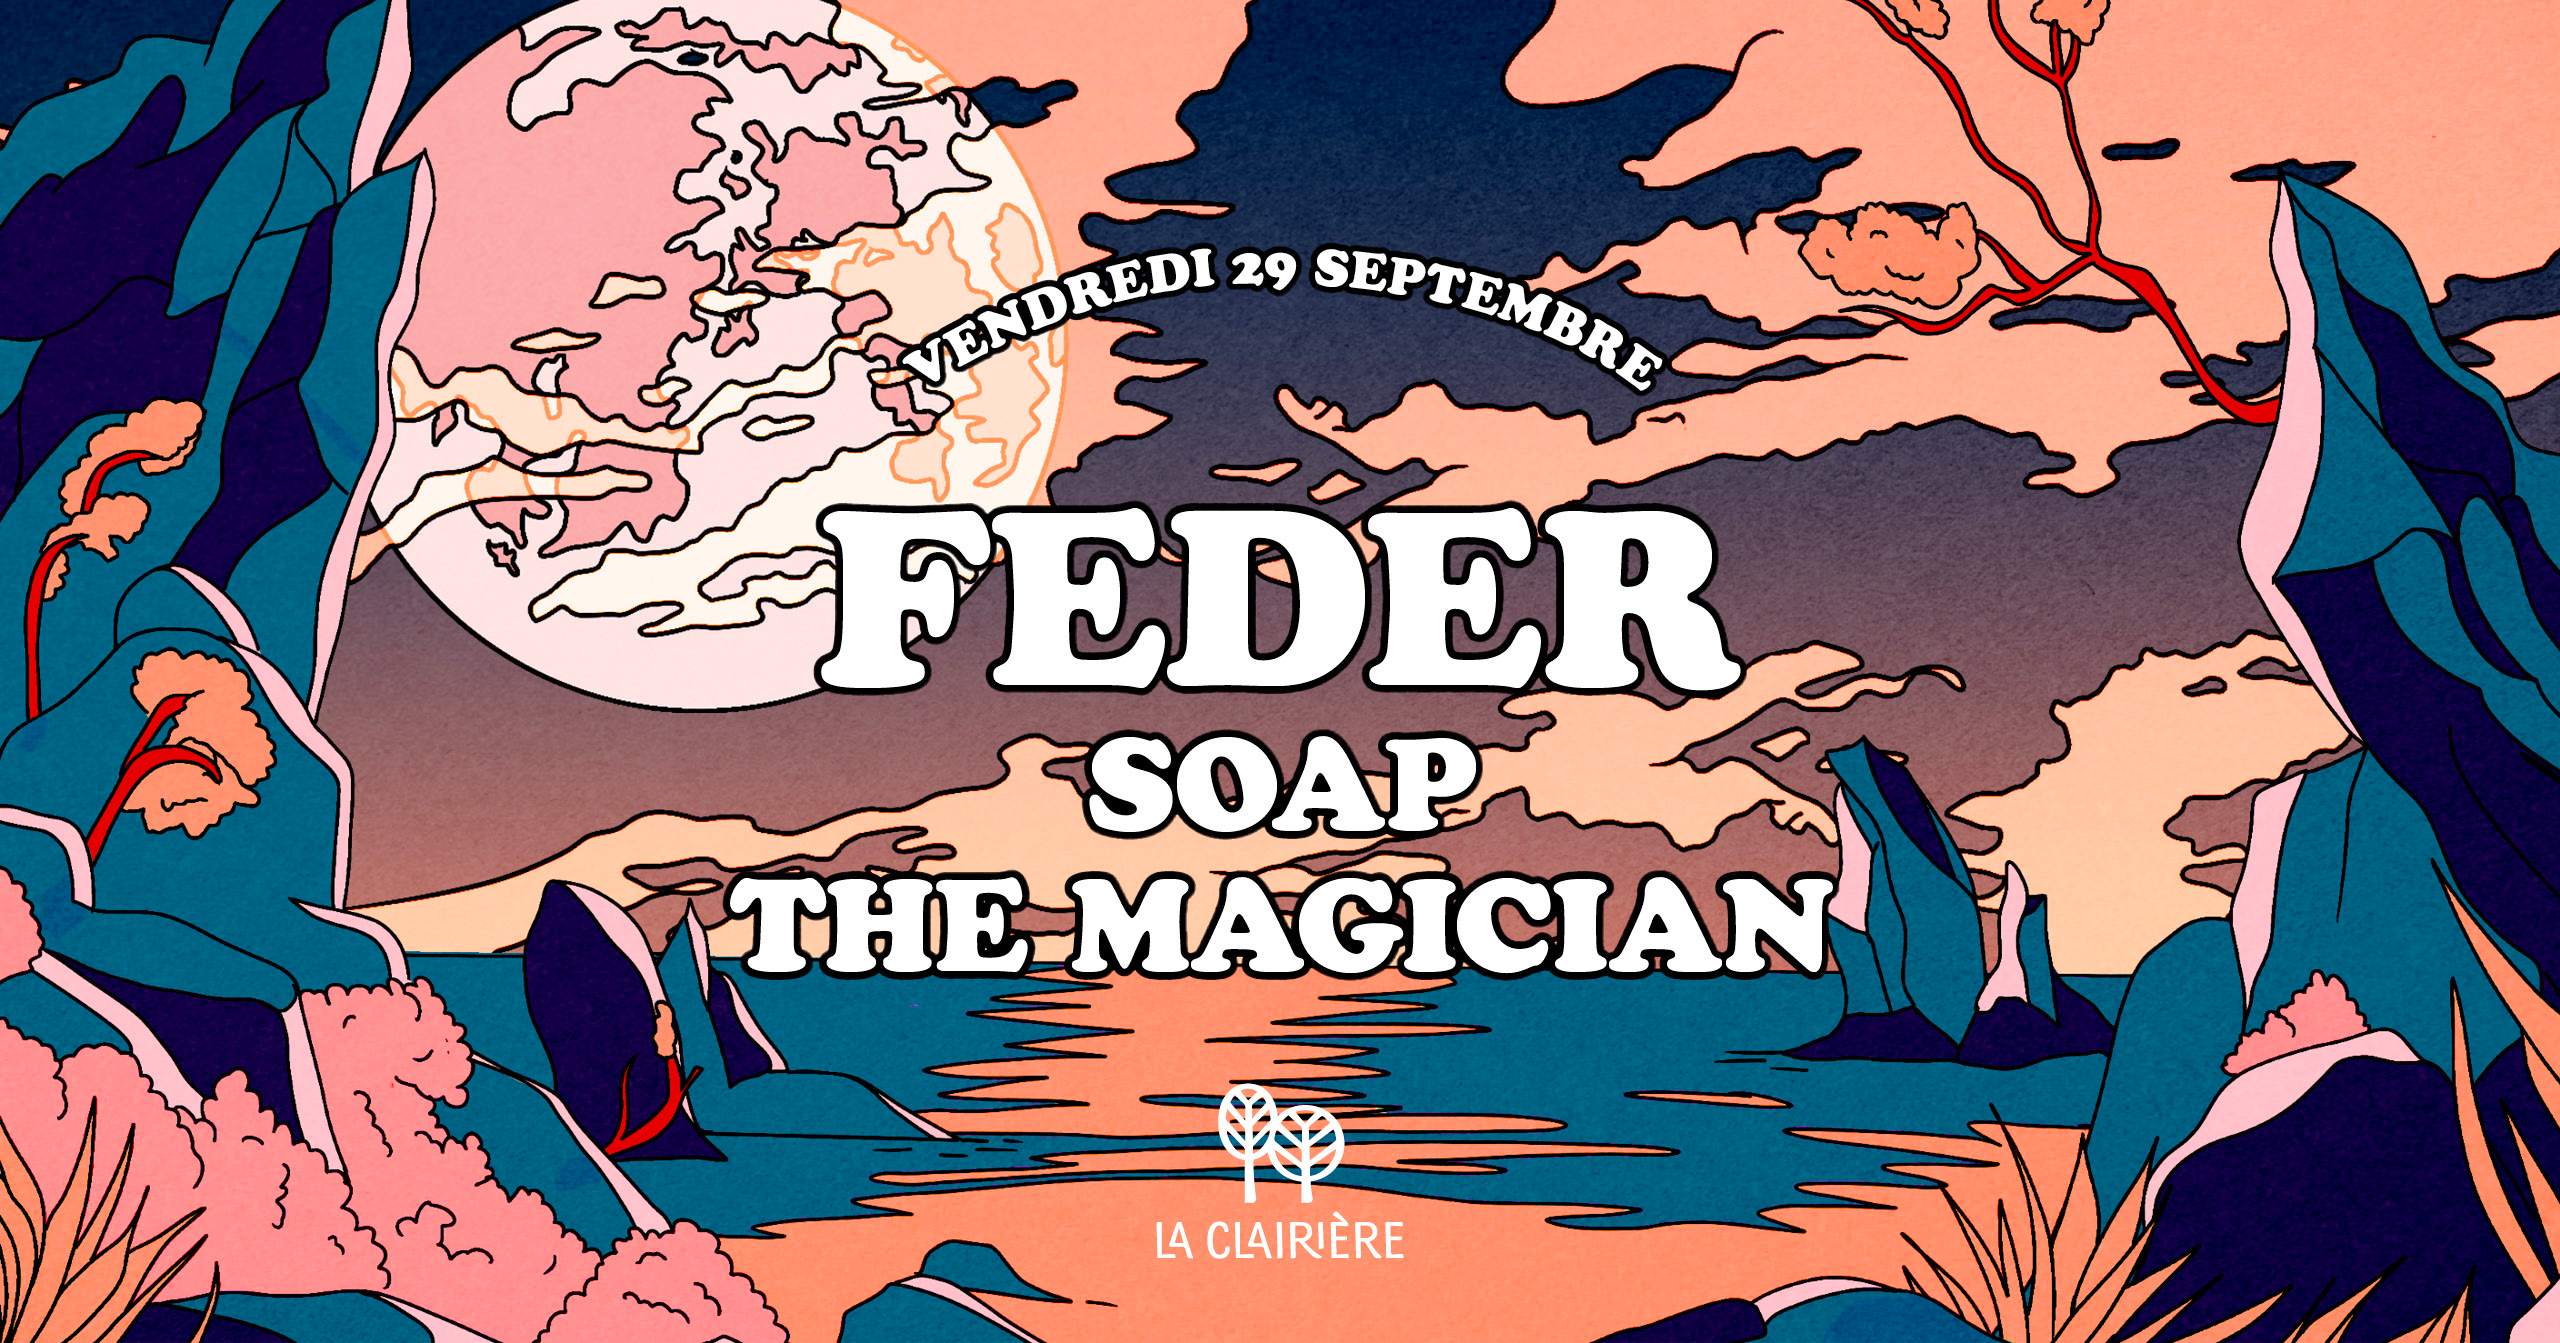 La Clairiere: Feder, The Magician - Página frontal